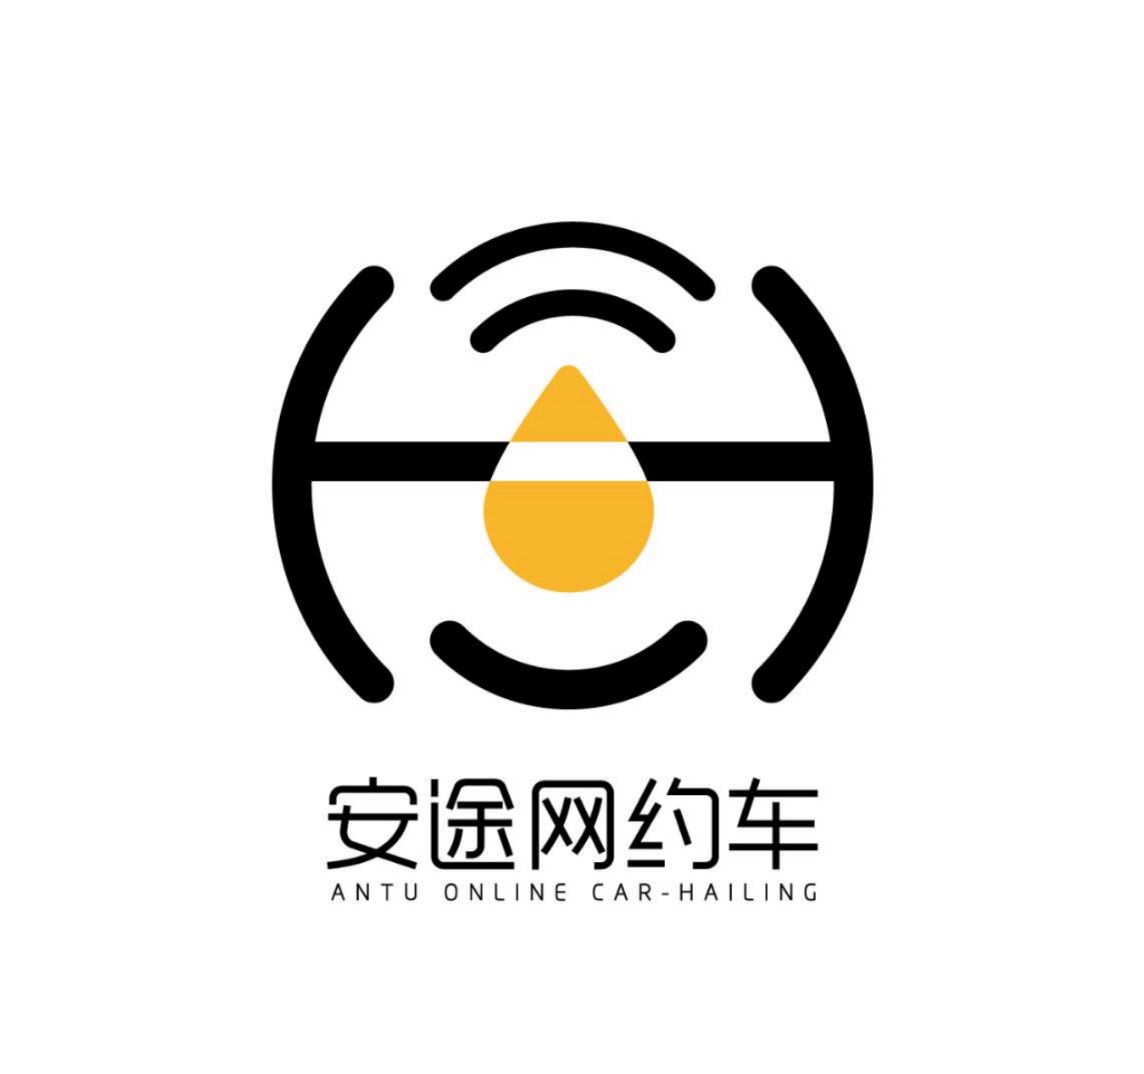 网约车logo设计图片